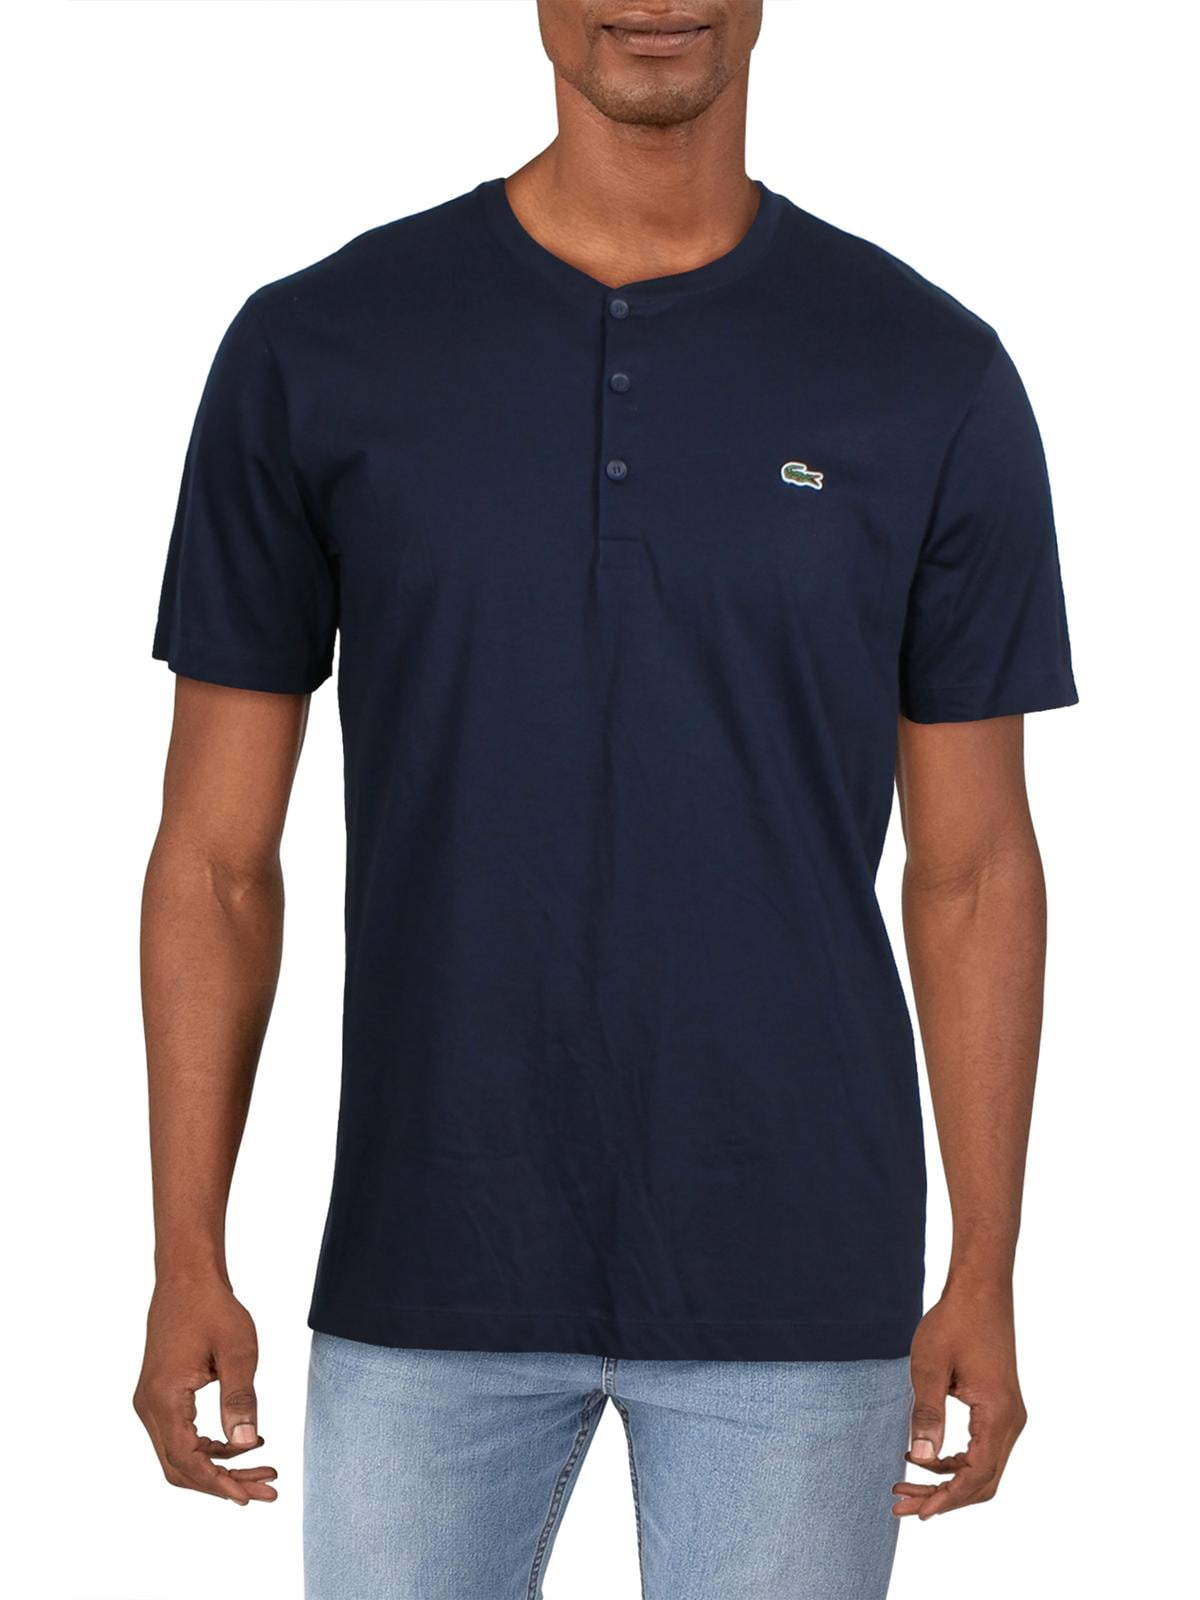 Uændret beruset Undertrykkelse Lacoste Mens Big & Tall Regular Fit Button T-Shirt - Walmart.com